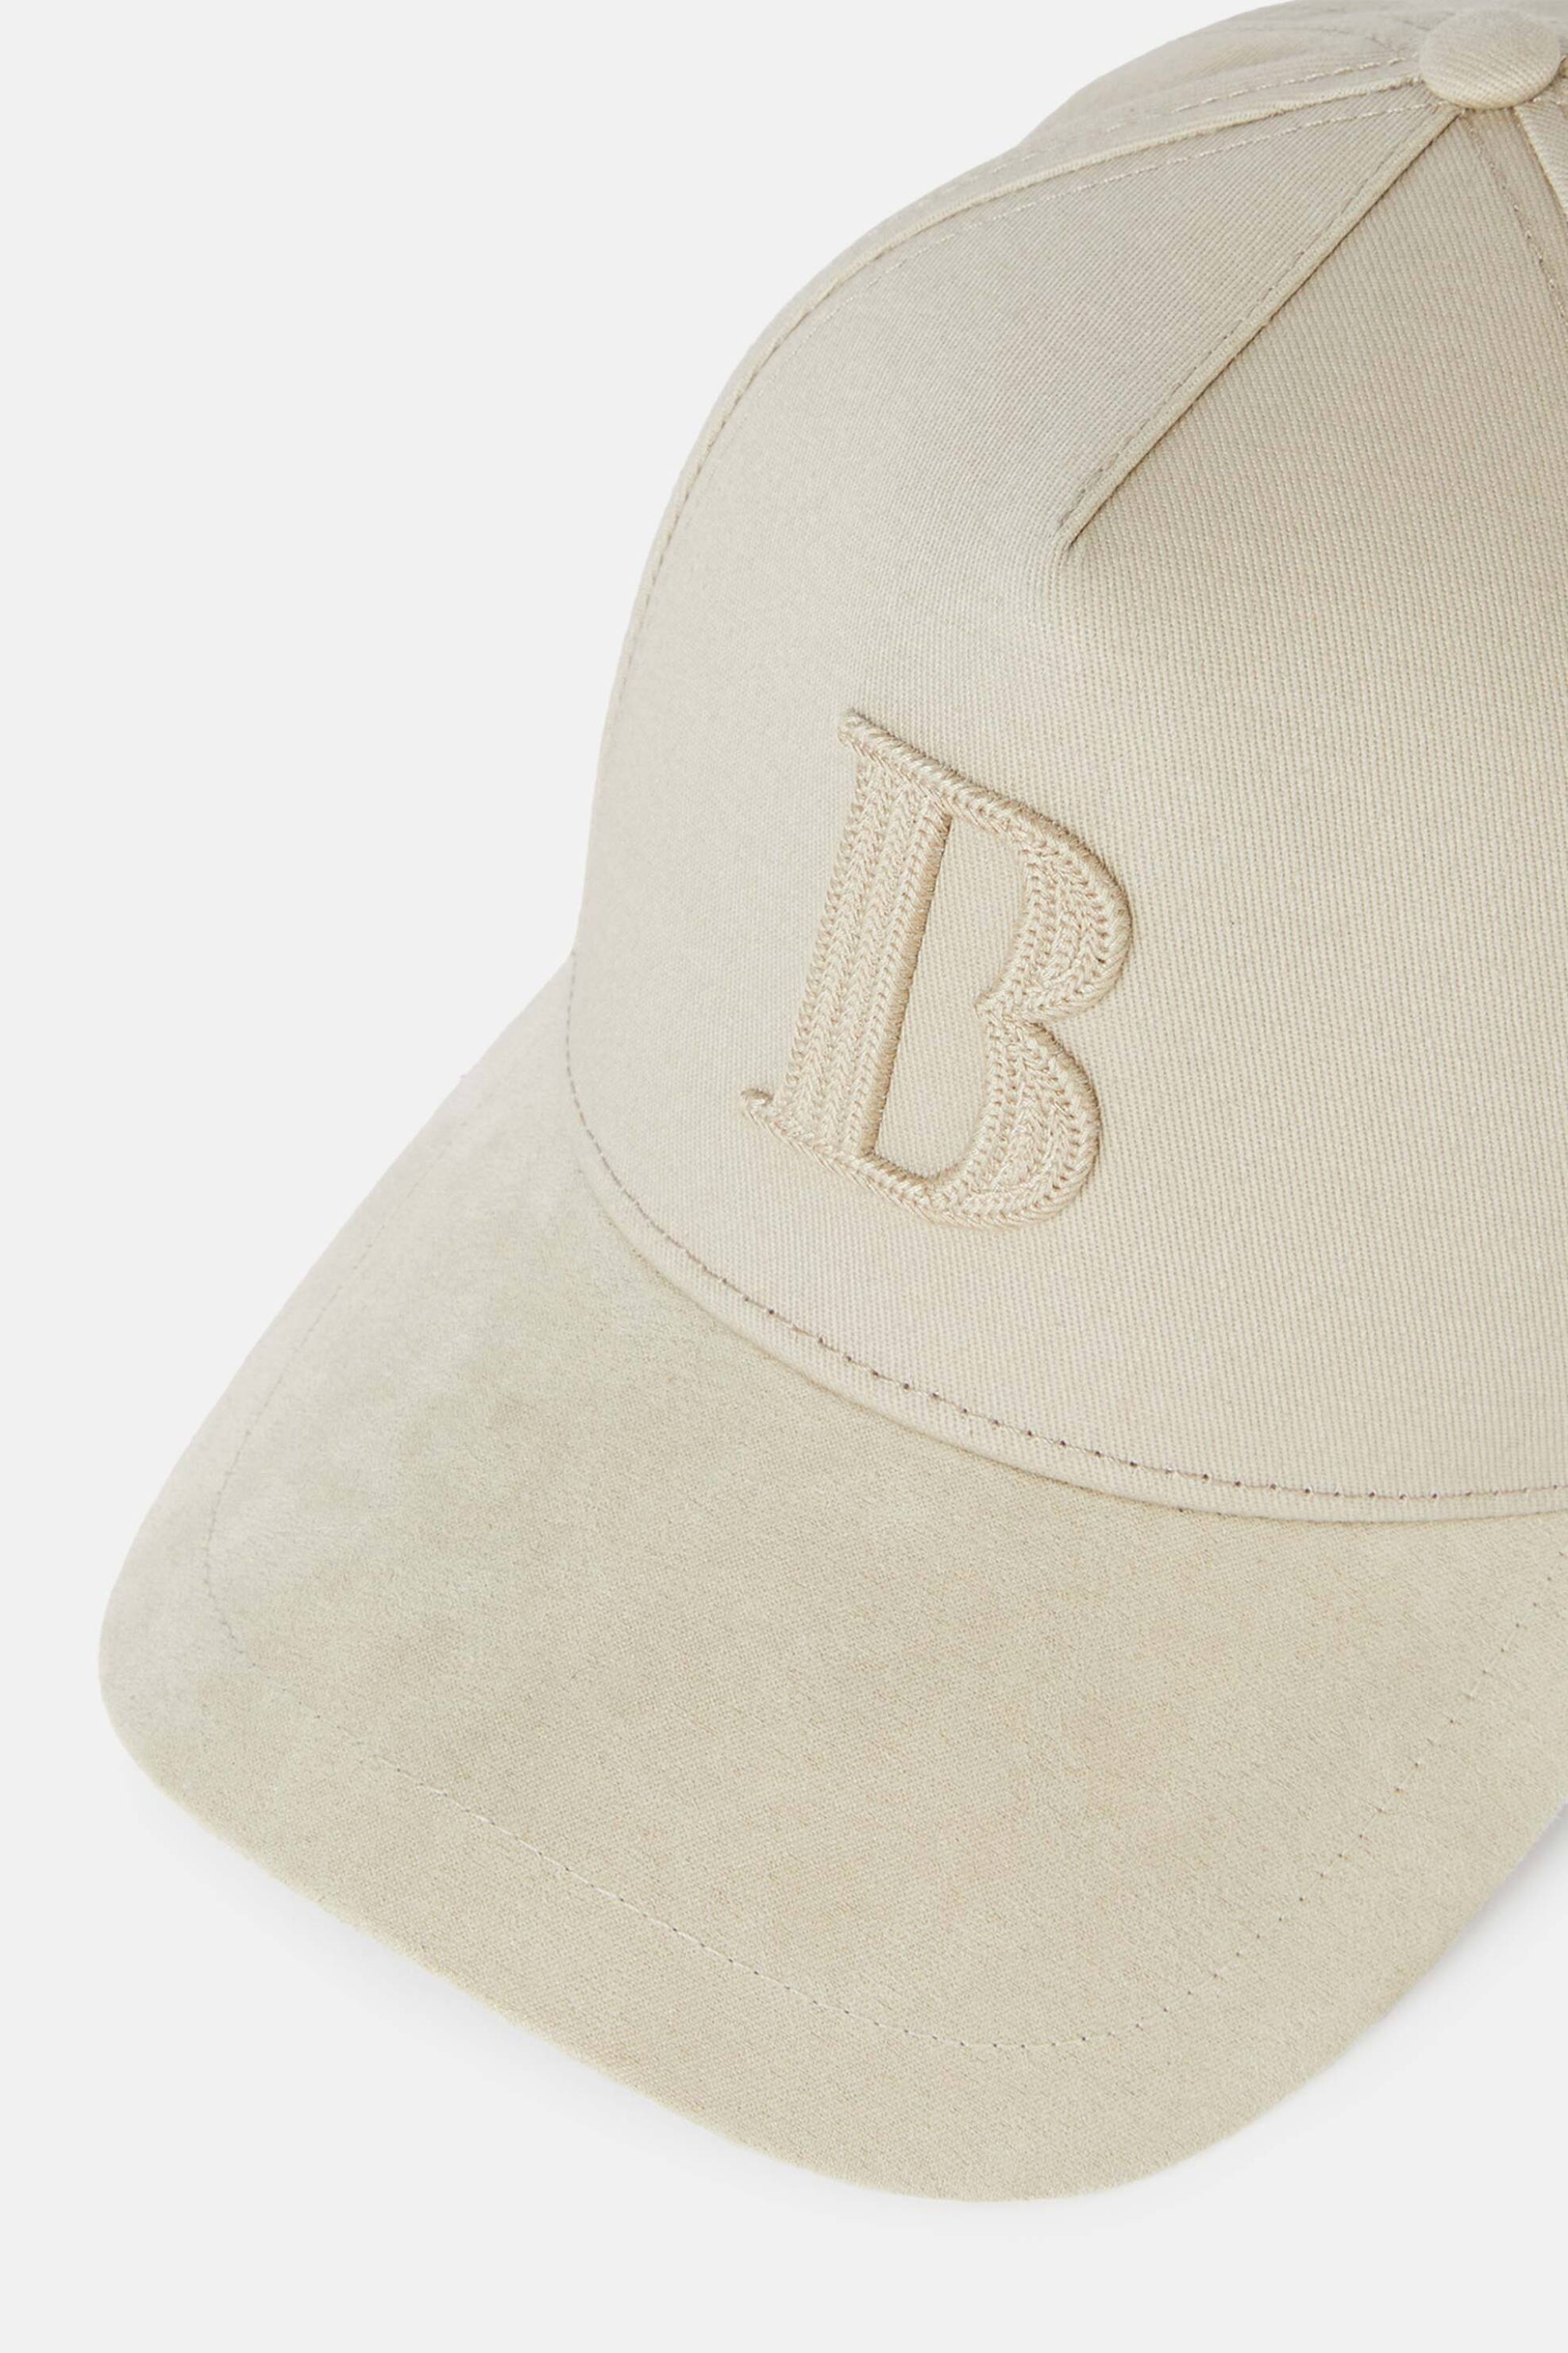 Ανδρική Μόδα > Ανδρικά Αξεσουάρ > Ανδρικά Καπέλα & Σκούφοι Boggi Milano ανδρικό καπέλο με κεντημένο monogram - BO24P006001 Κρέμ